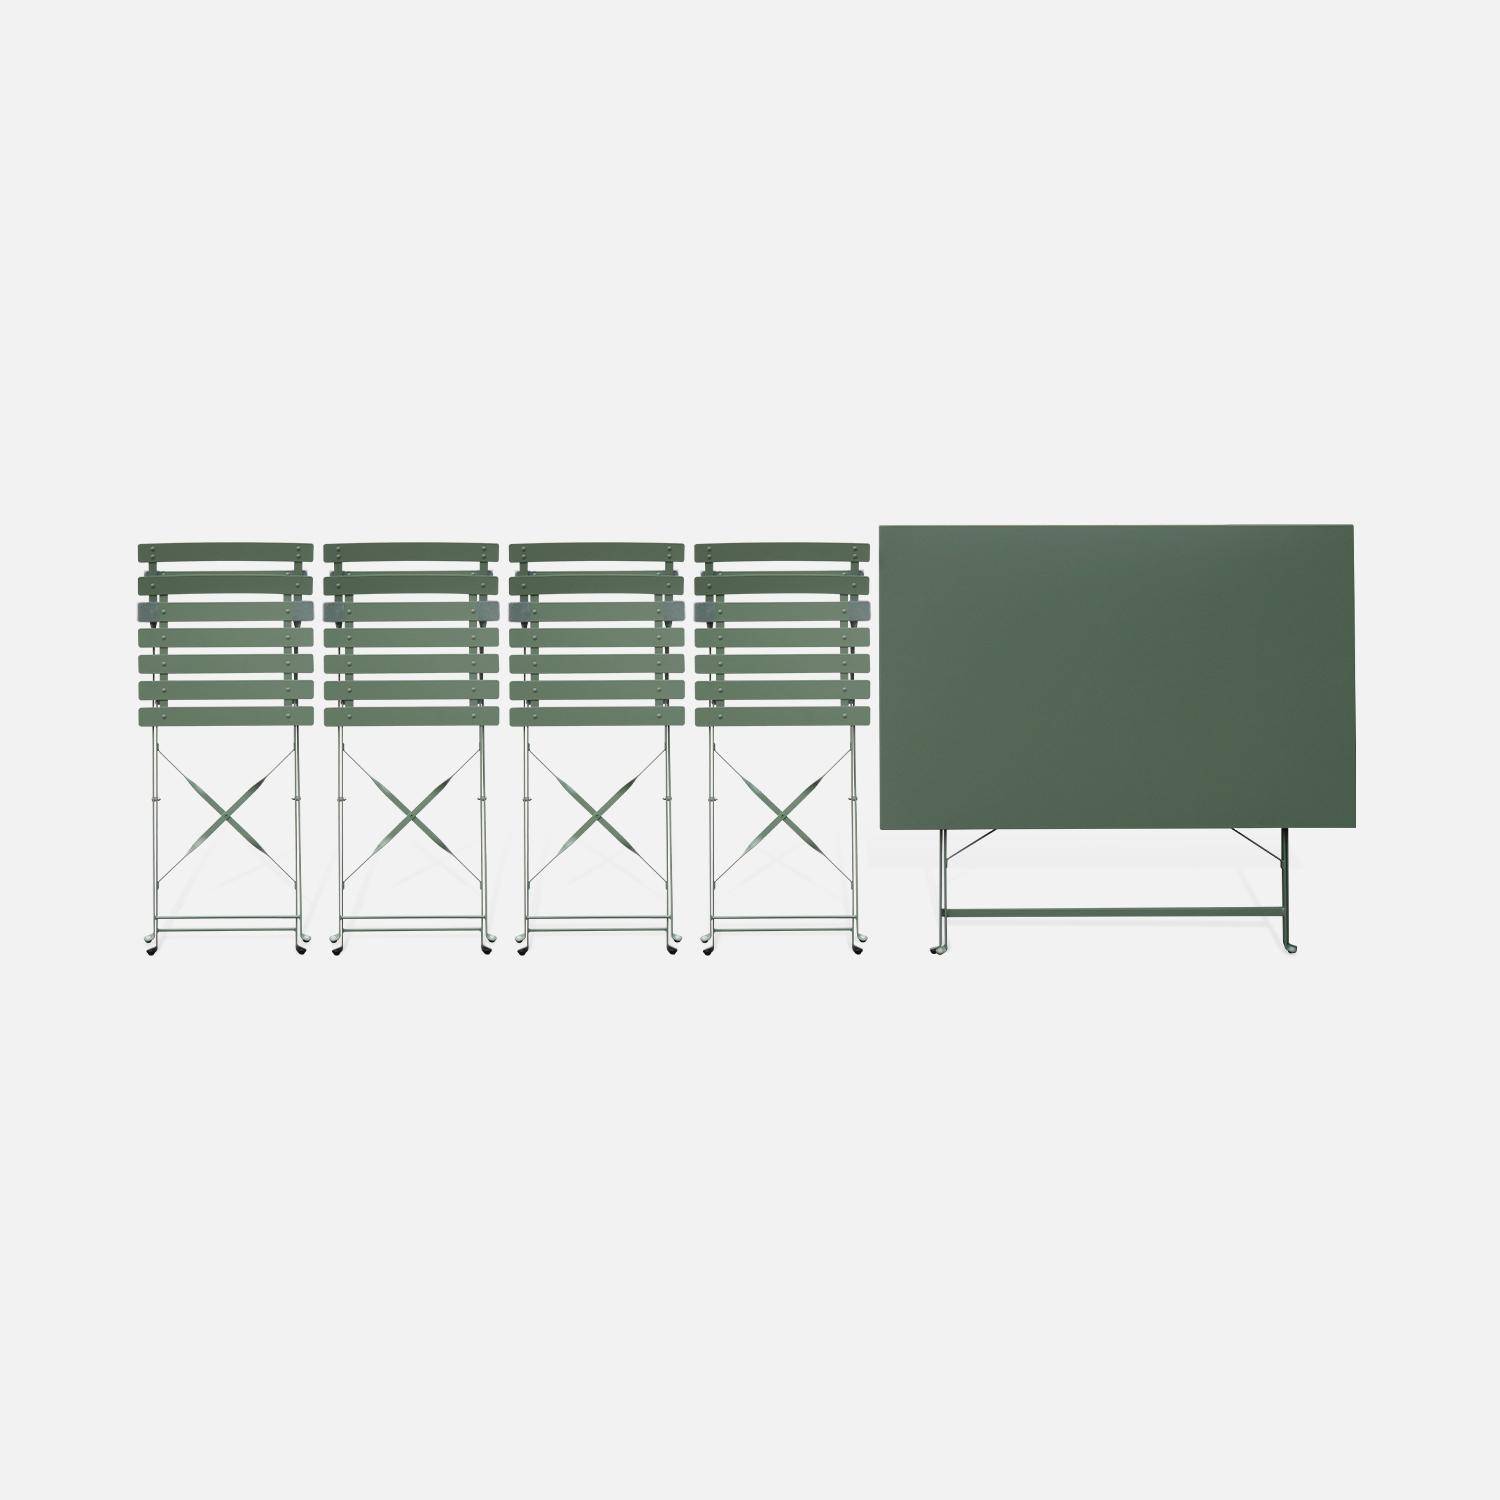 Tavolo da giardino, bar bistrot, pieghevole - modello: Emilia, rettangolare, colore: Grigio verde - Tavolo, dimensioni: 110x70cm, con quattro sedie pieghevoli, acciaio termolaccato,sweeek,Photo6